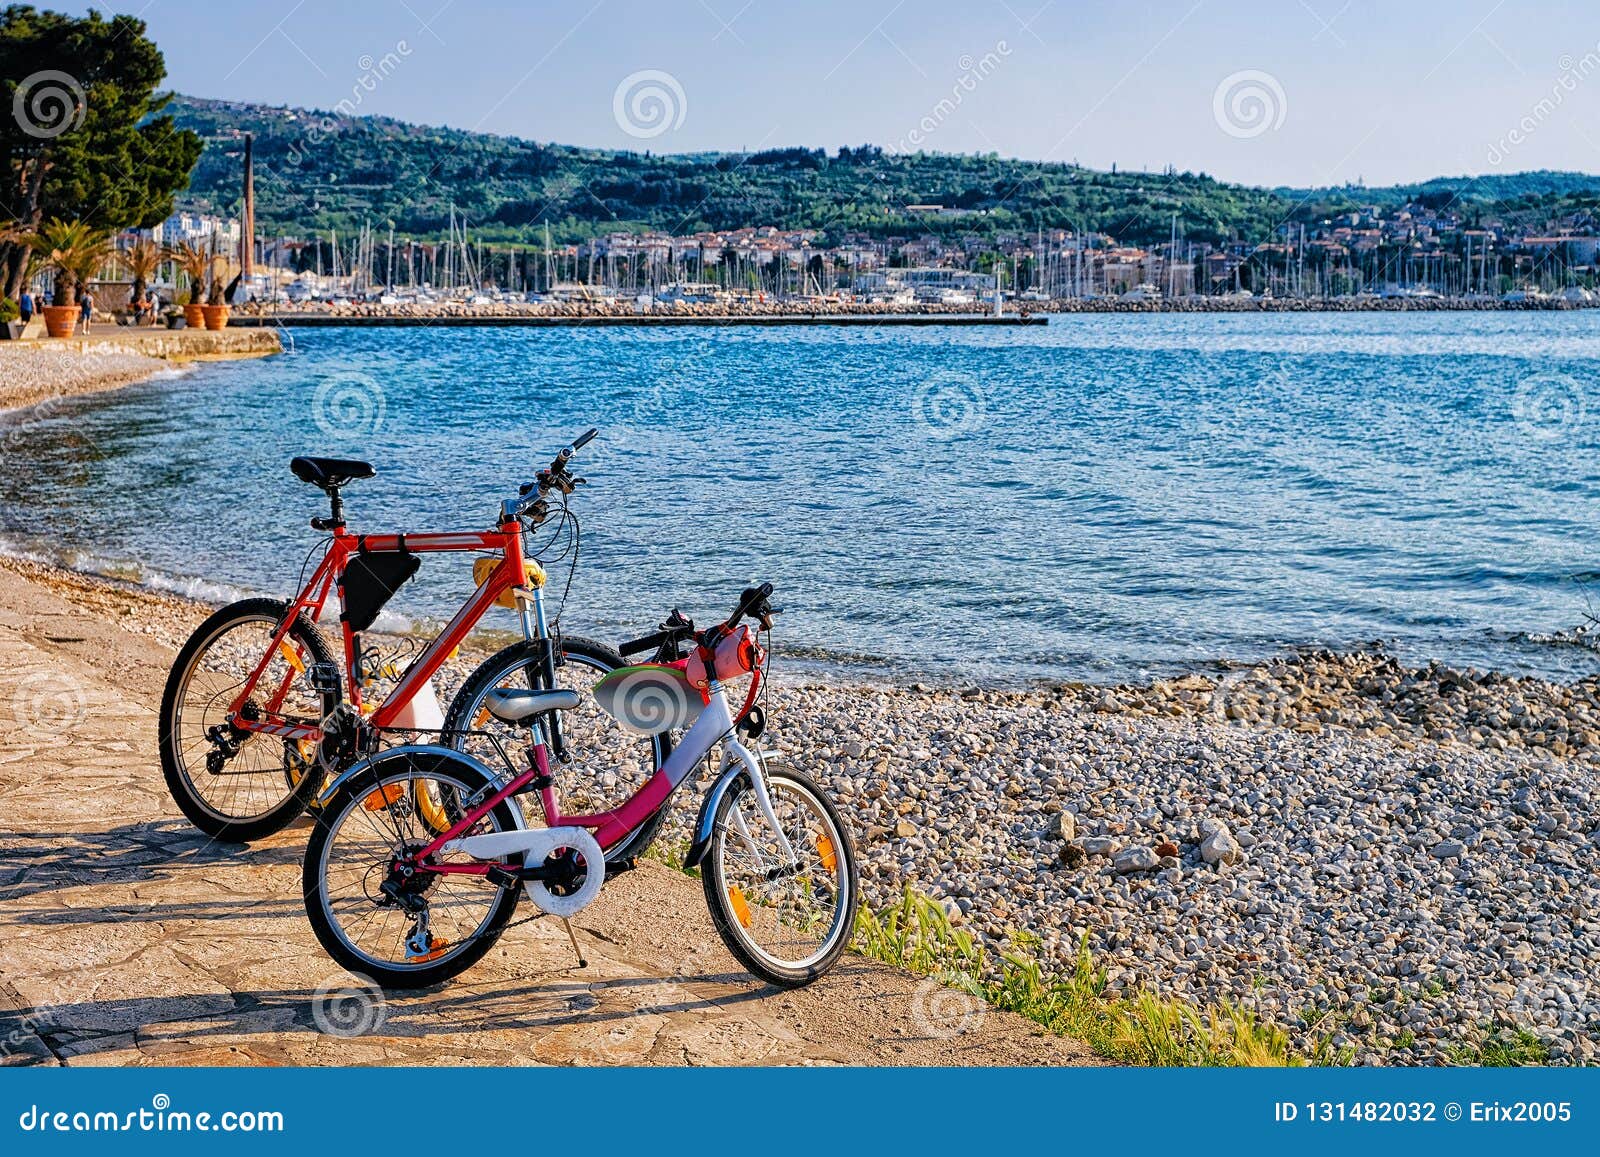 adriatico in bicicletta